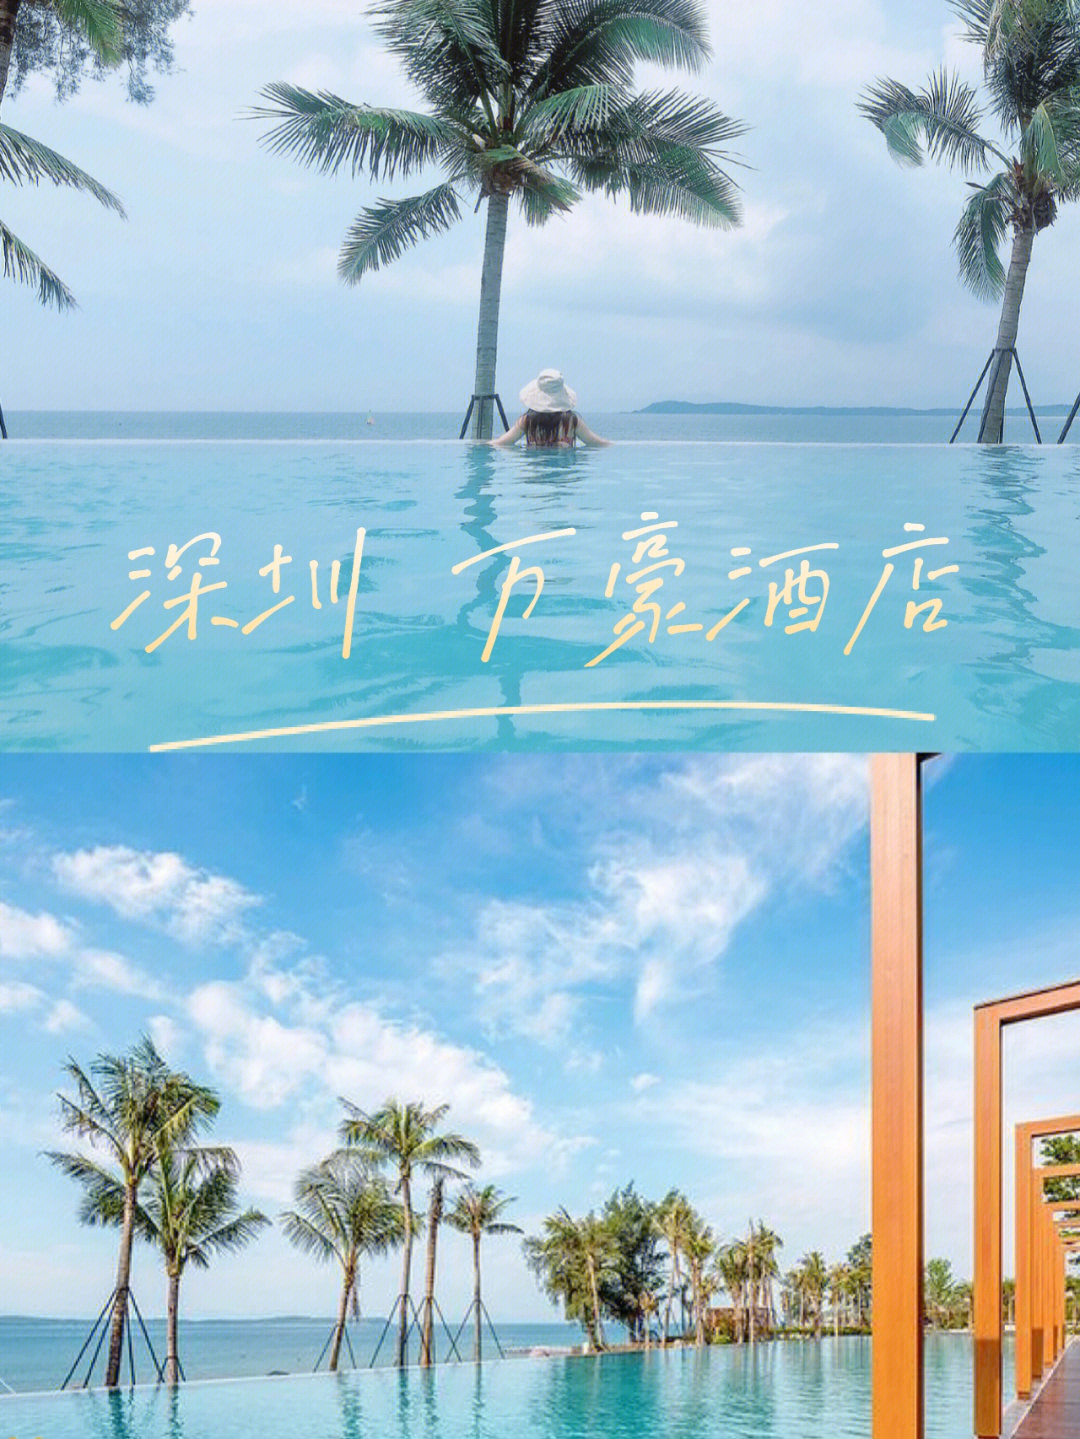 五一假期深圳接待游客518.22万人次旅游收入创五年新高